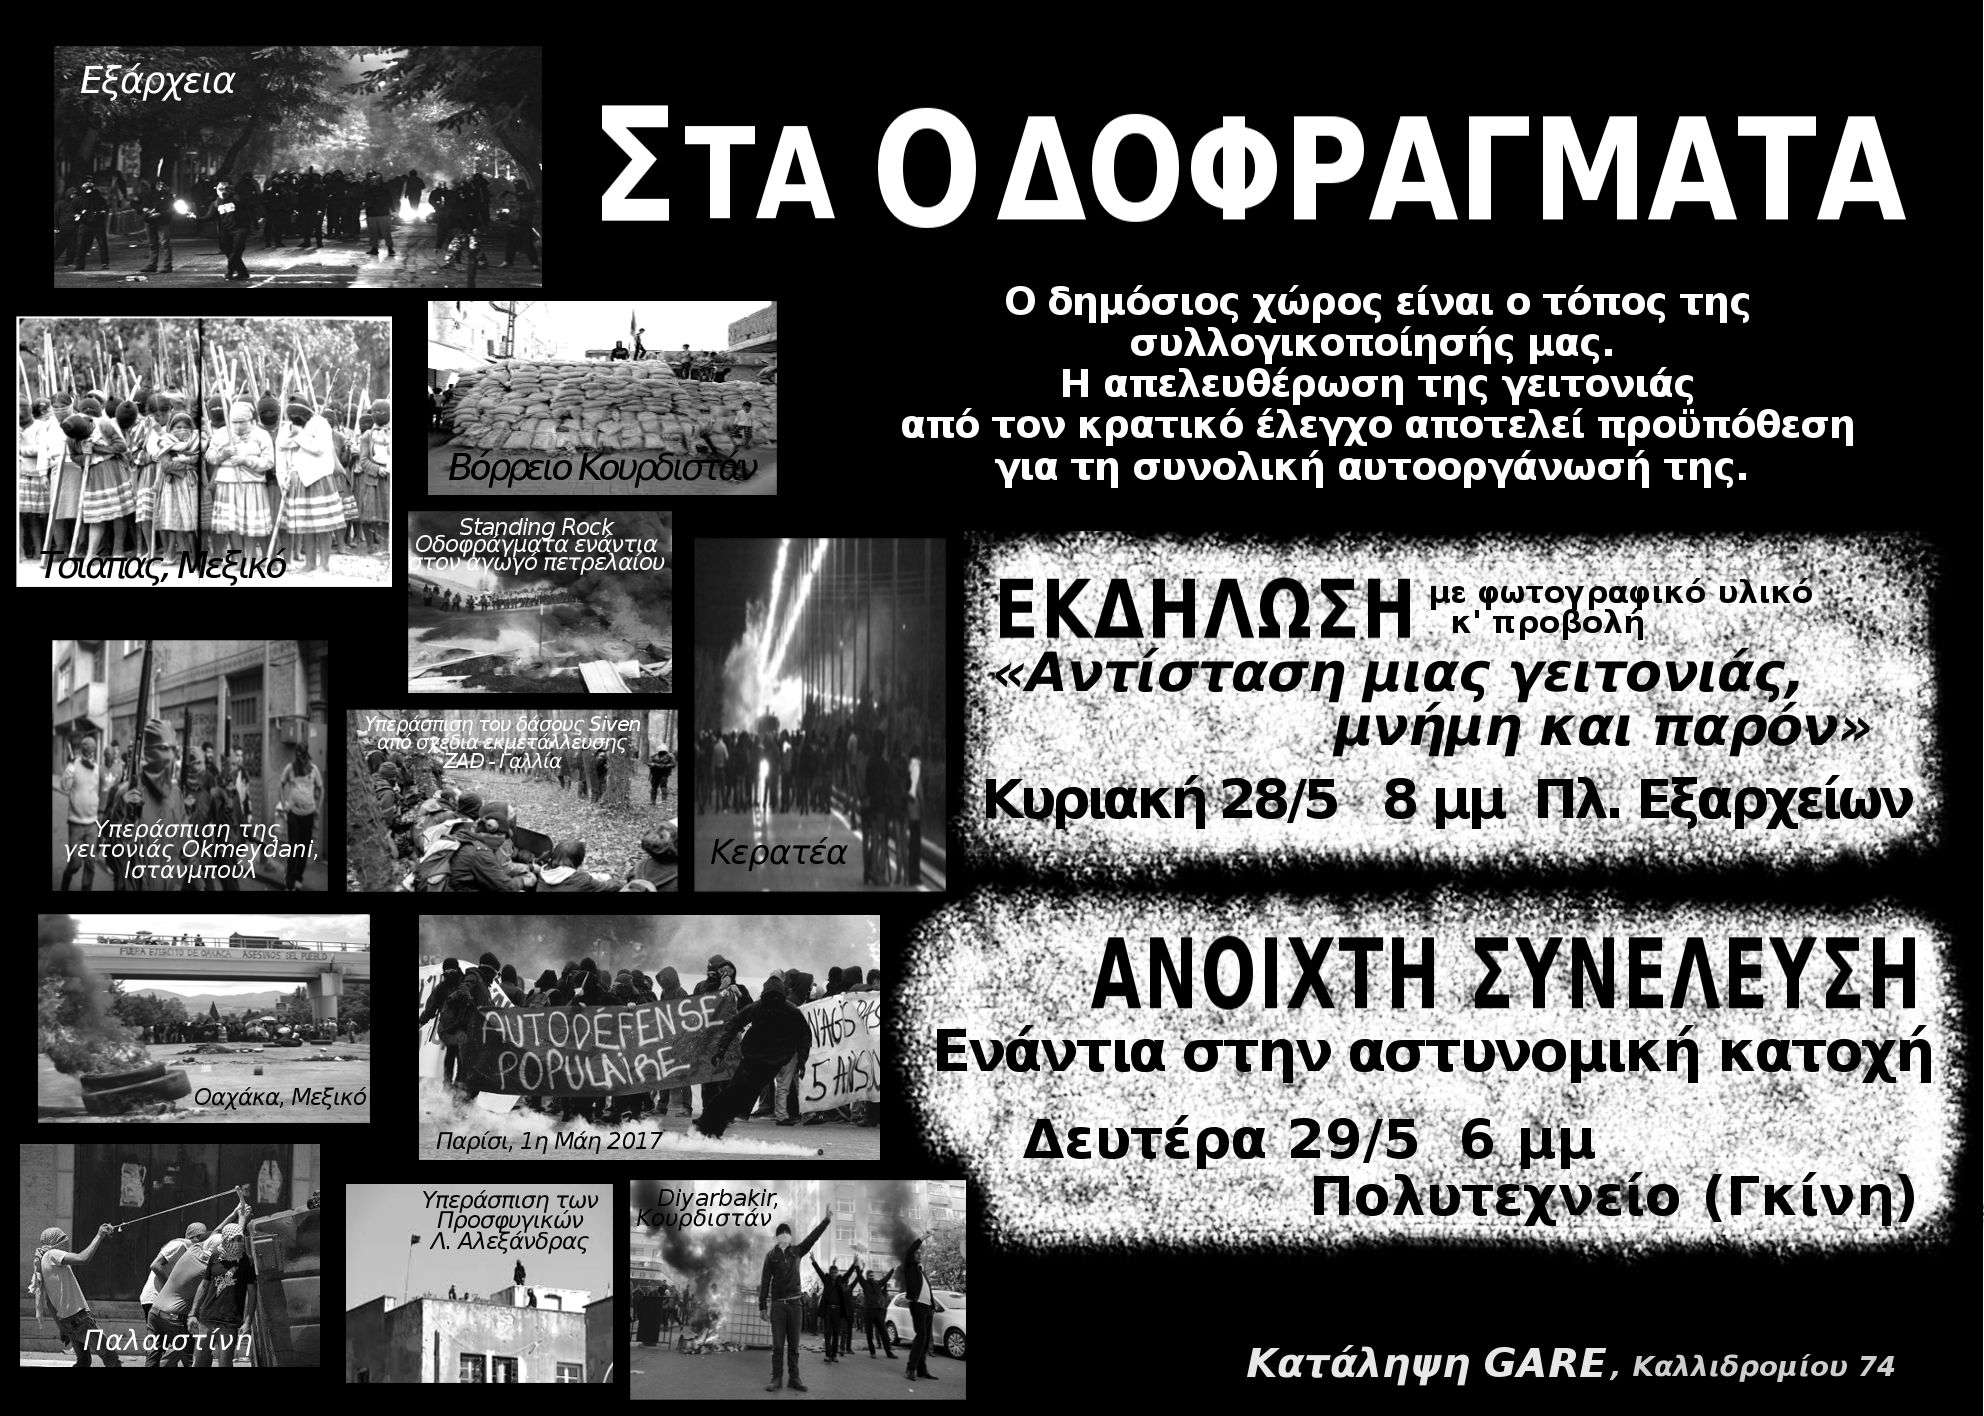 Αθήνα: Κείμενο/κάλεσμα στην Ανοιχτή Συνέλευση ενάντια στην αστυνομική κατοχή στα Εξάρχεια